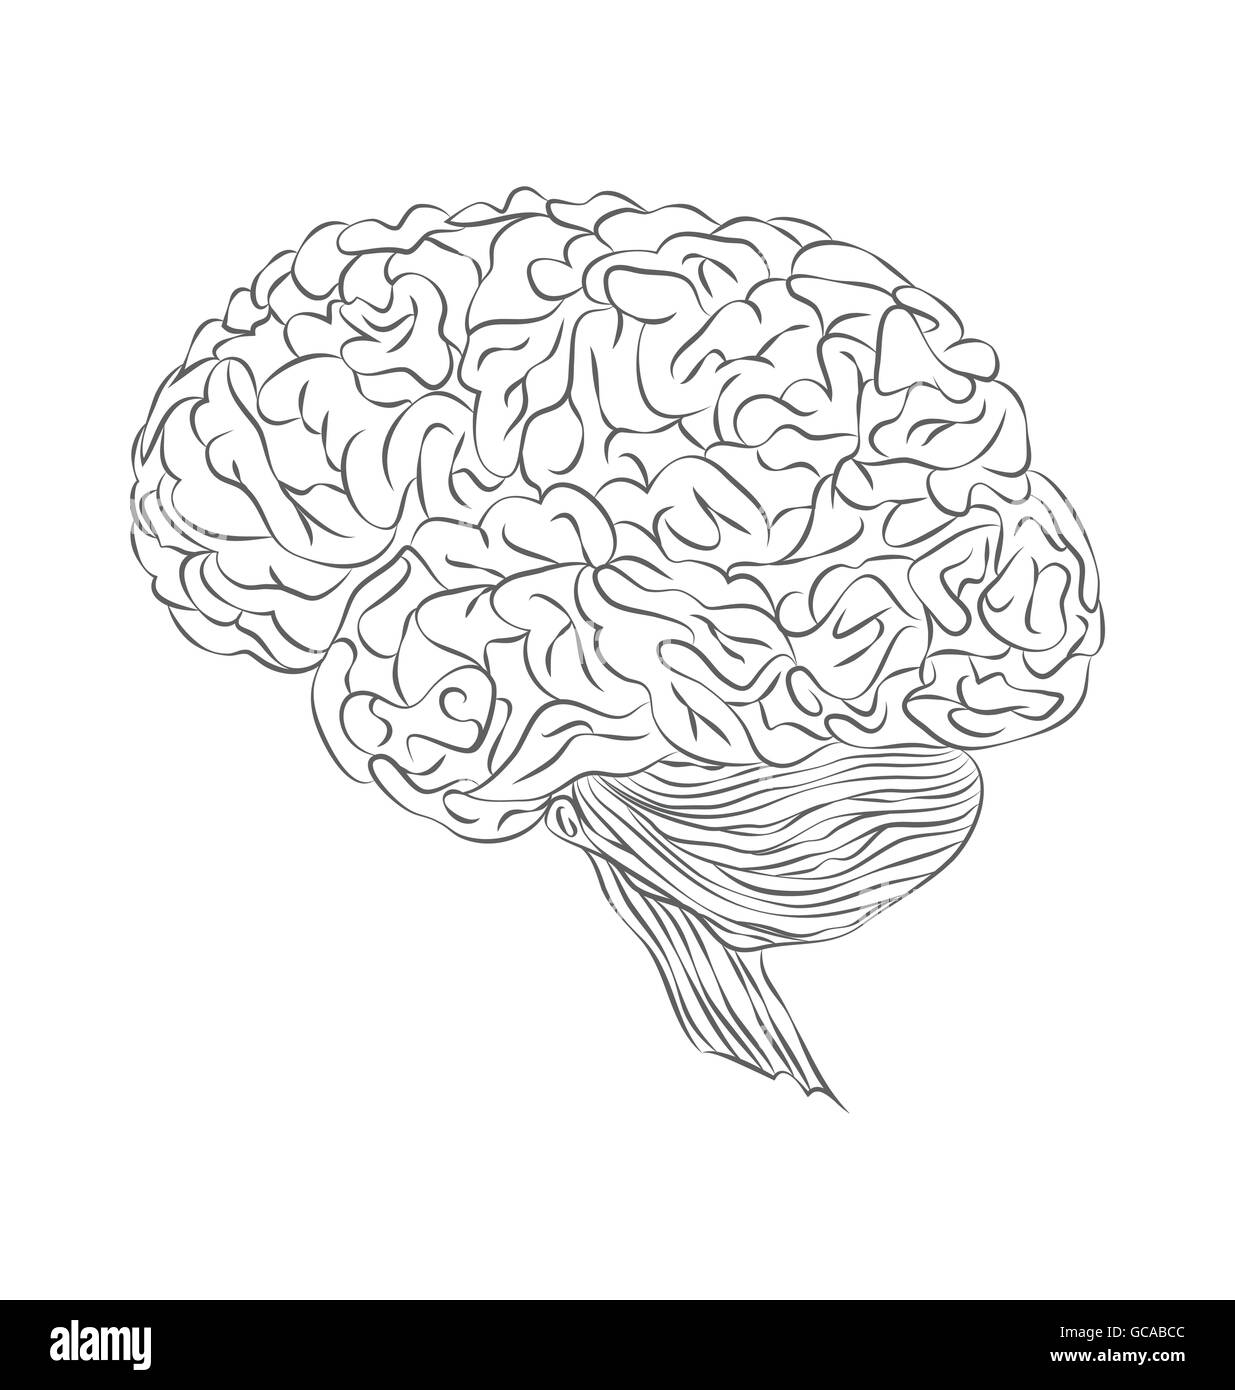 Menschliche Gehirn. Einzelne flache Symbol. Seitenansicht Stock Vektor